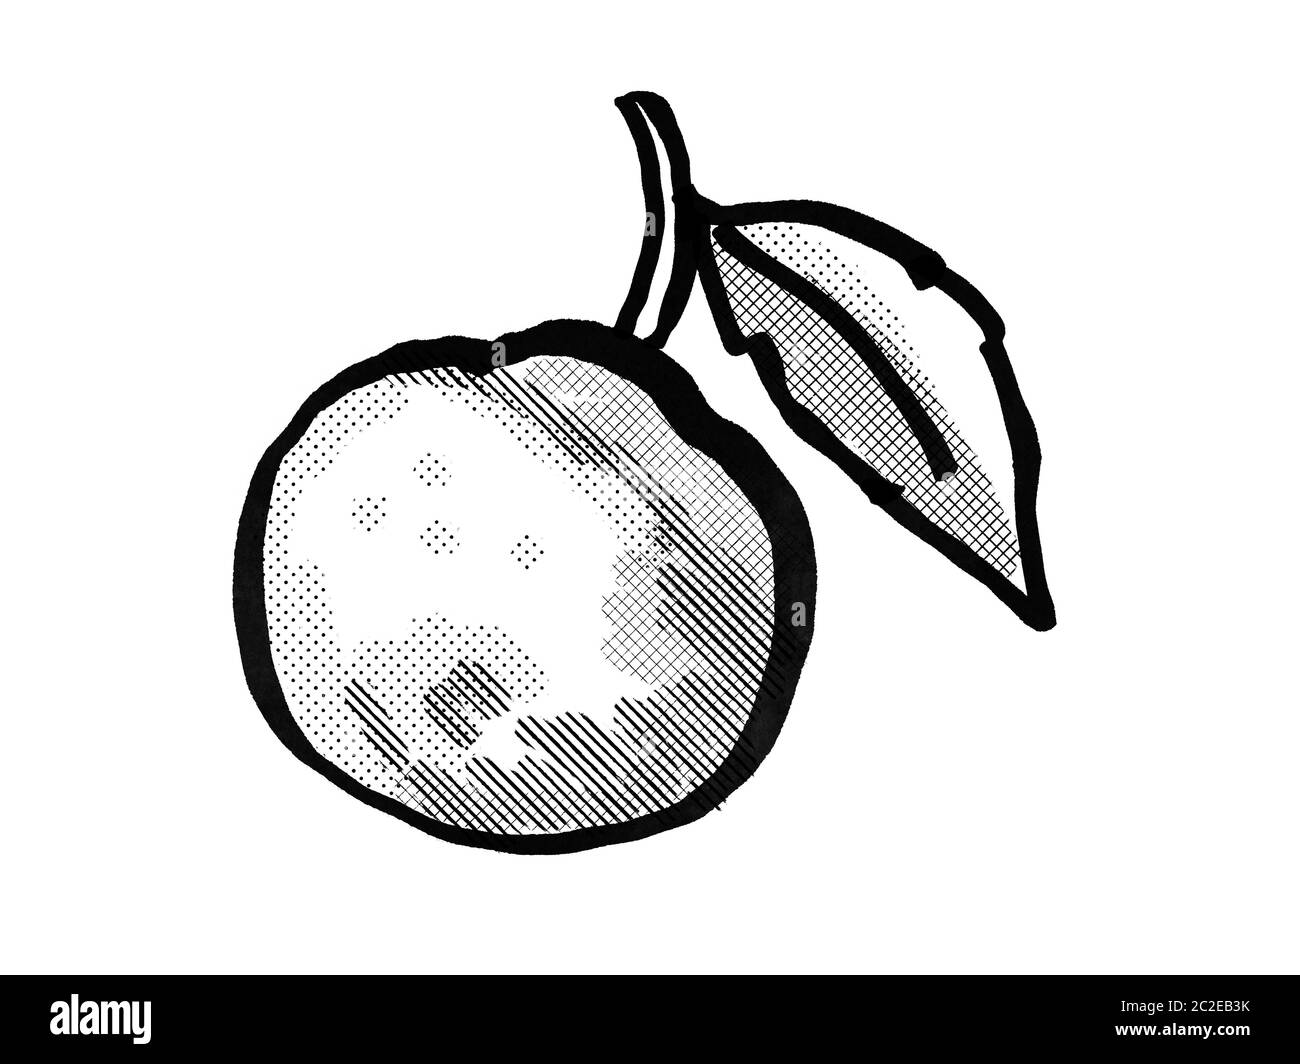 Retro Cartoon Stil Zeichnung eines orange Frucht mit Blatt auf isolierten weißen Hintergrund in Schwarz und Weiß gemacht Stockfoto